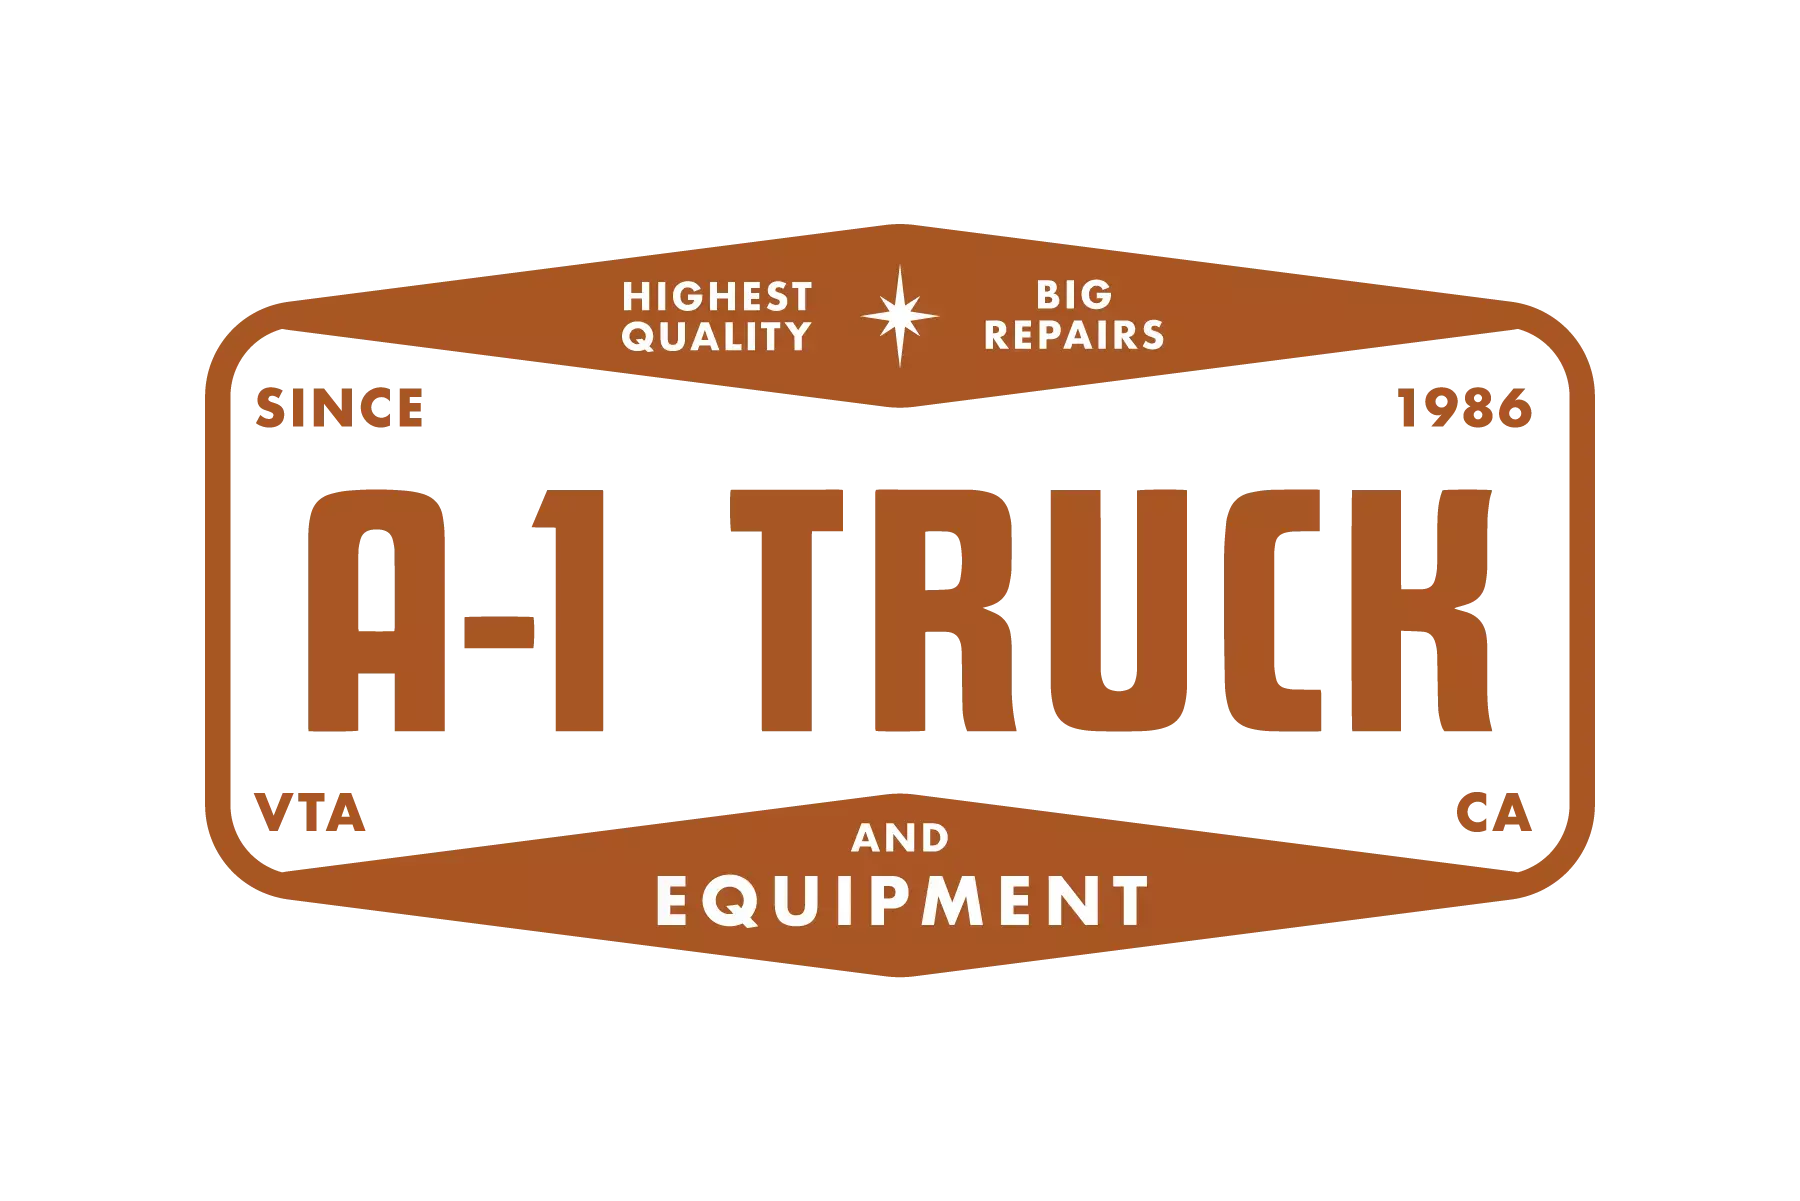 A-1 Truck & Equipment